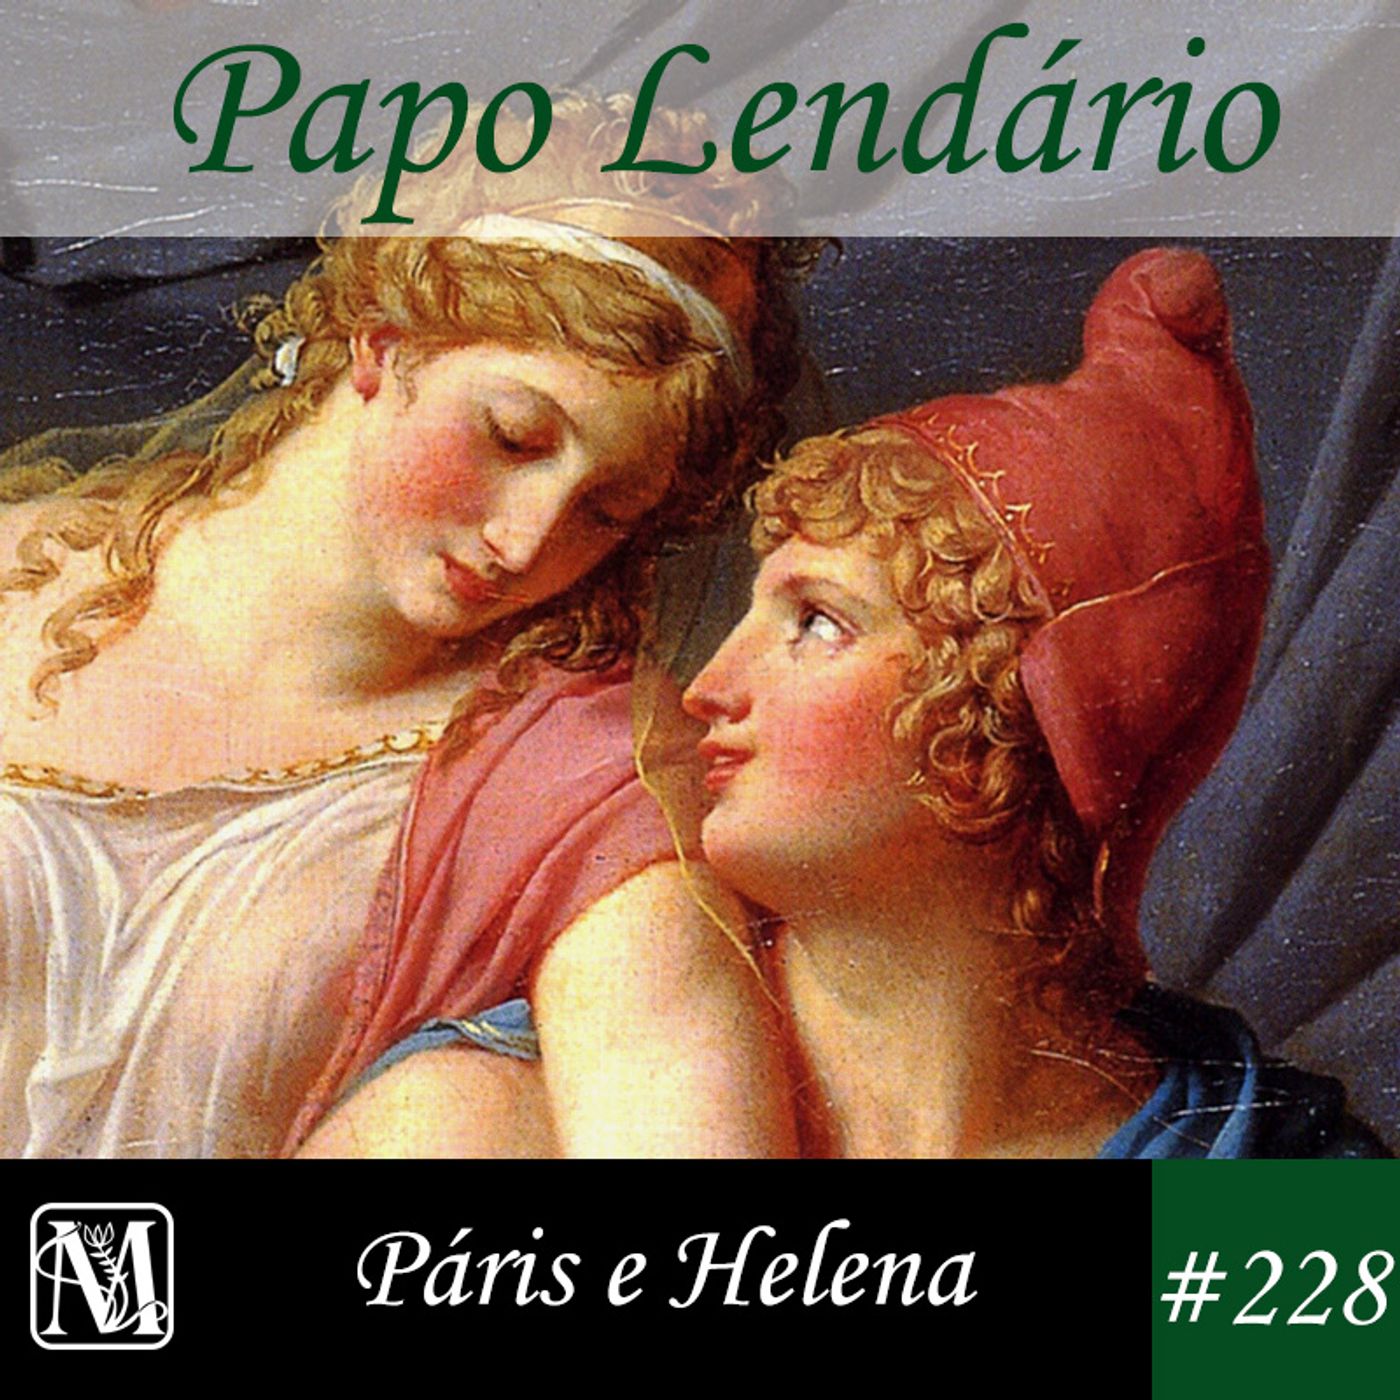 Papo Lendário #228 – Páris e Helena